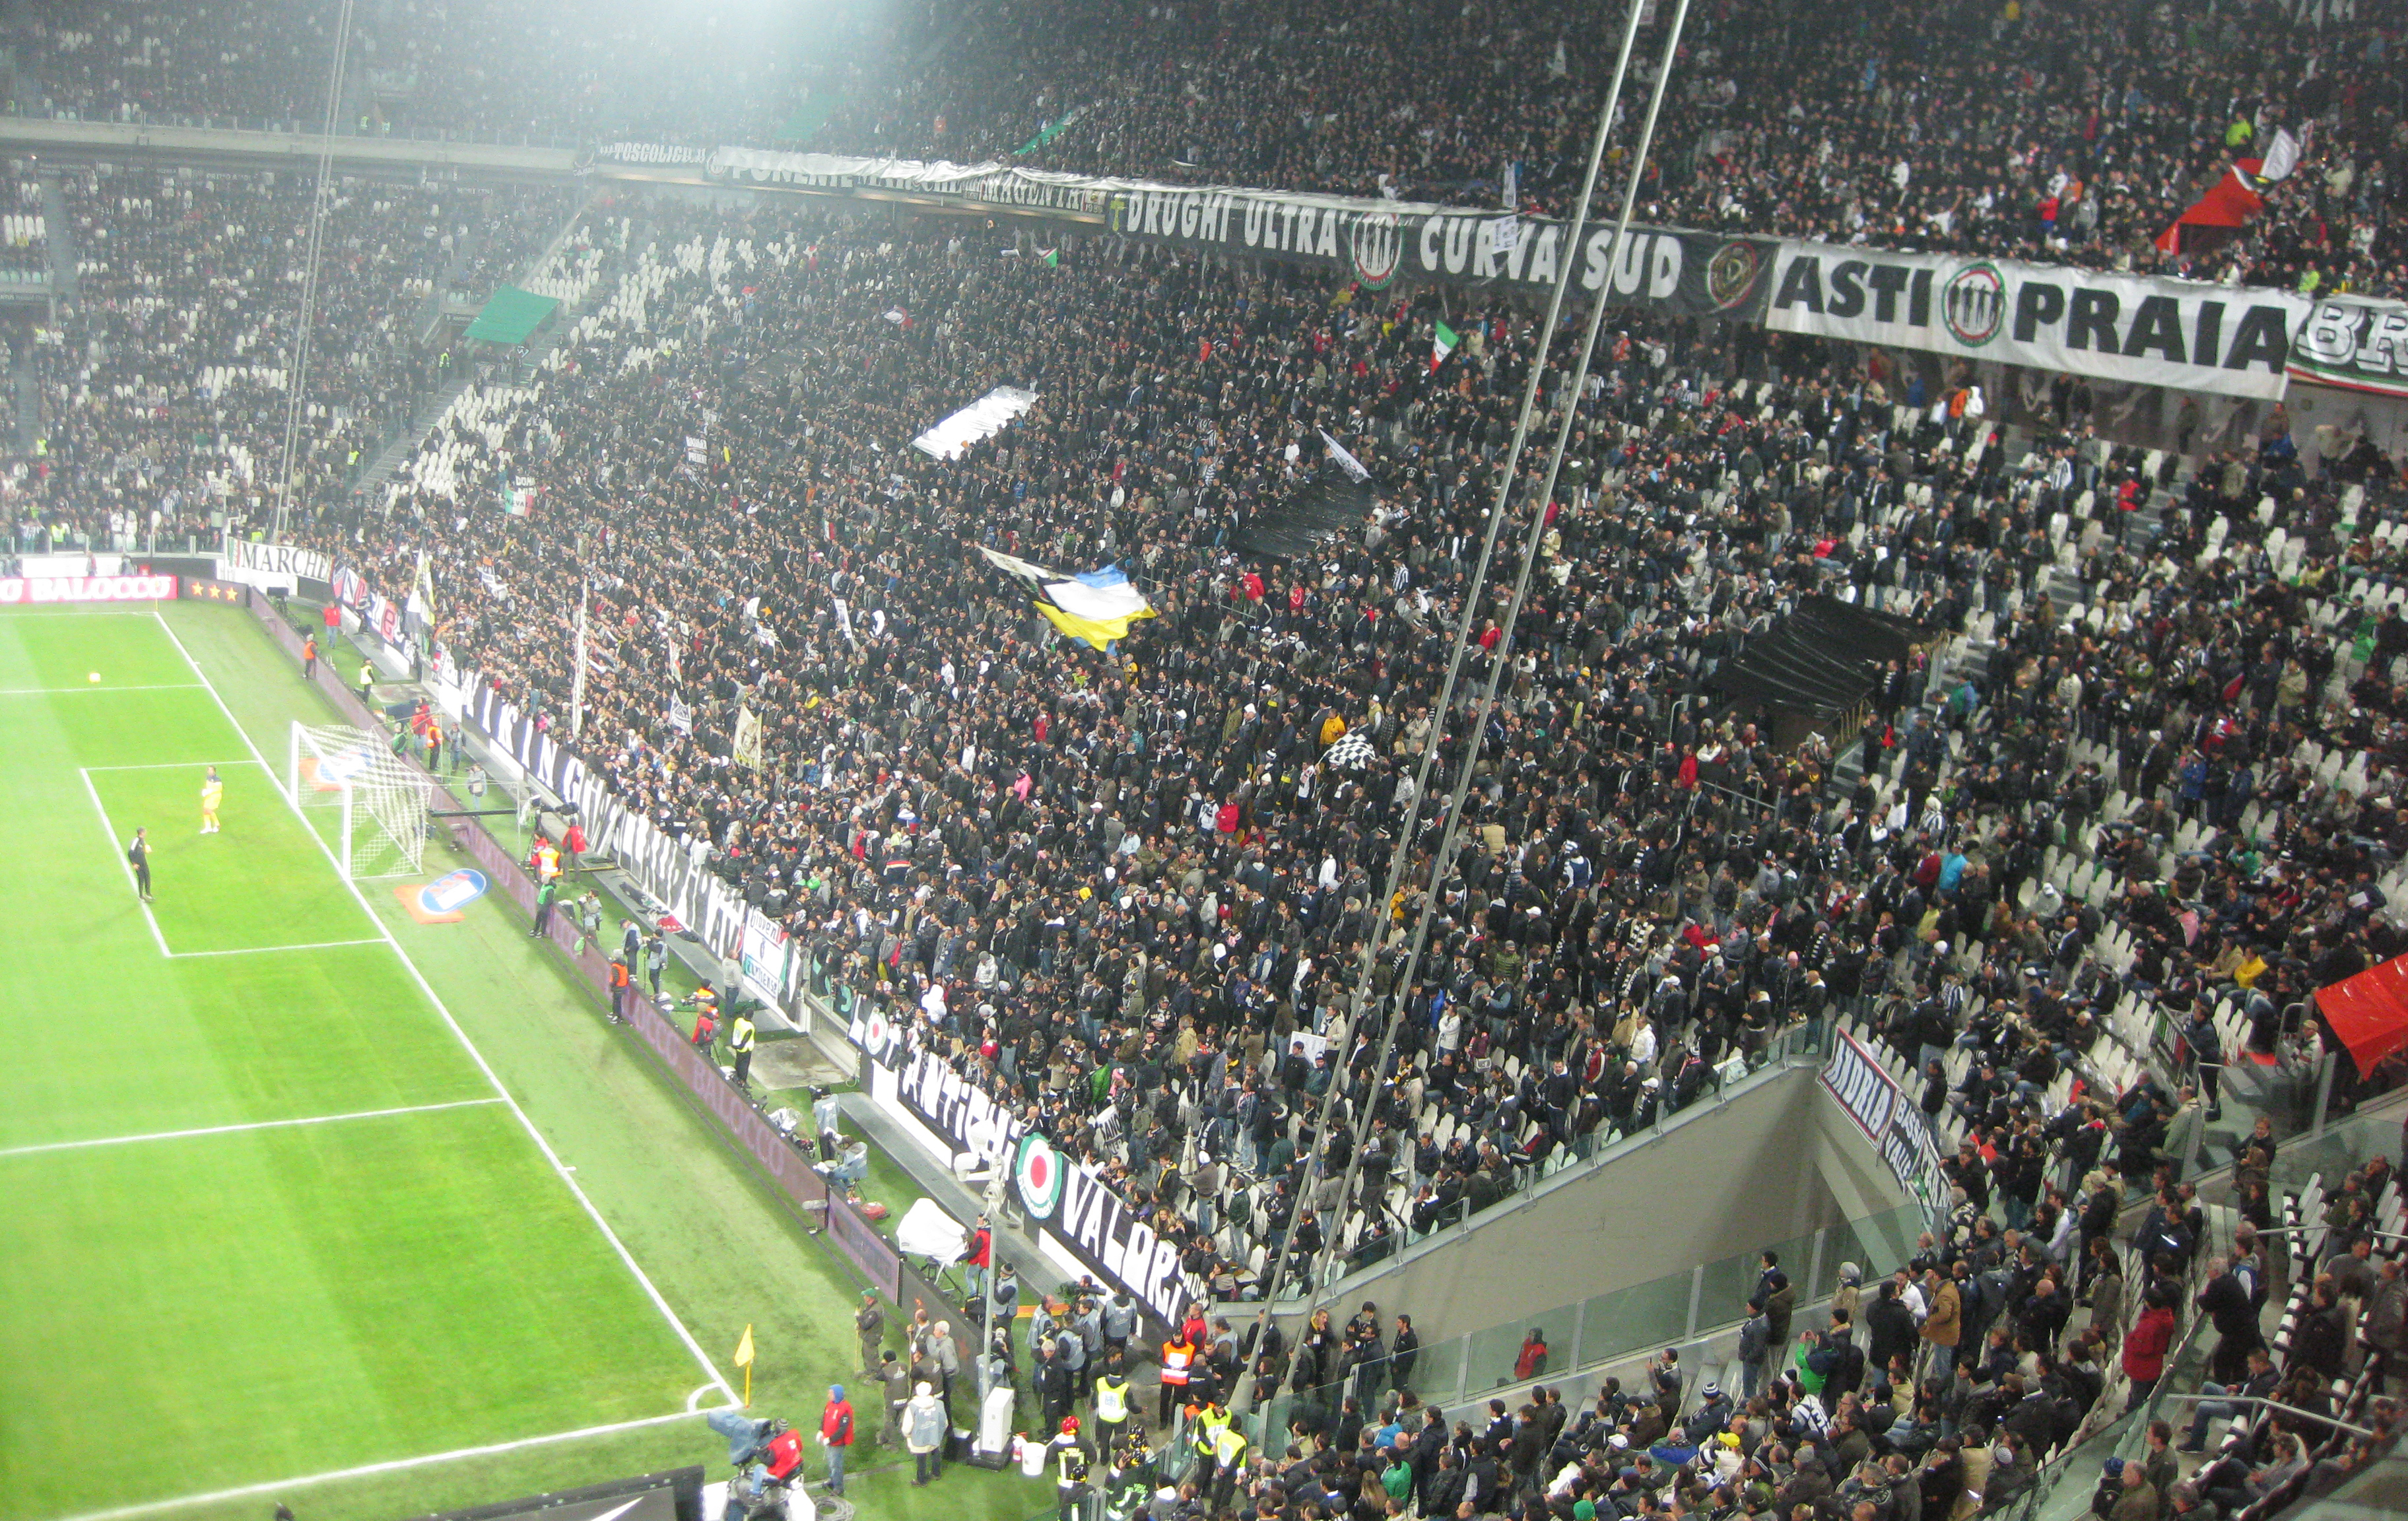 Doppia squalifica per la Juventus dopo i cori anti-Napoli